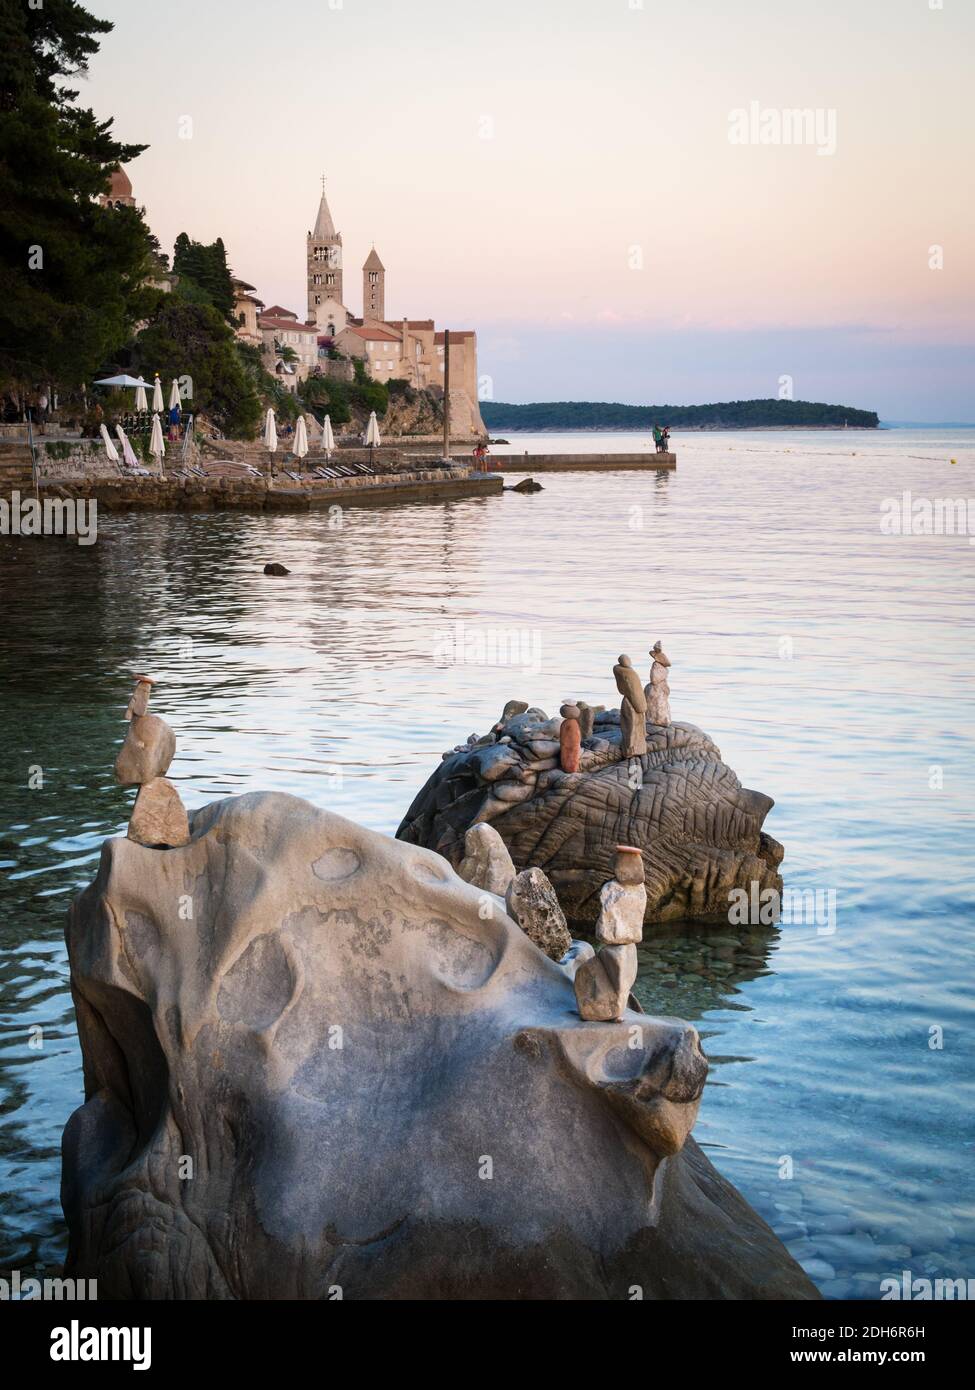 Plage de la ville de rab avec front de mer et sculptures de pierre Banque D'Images